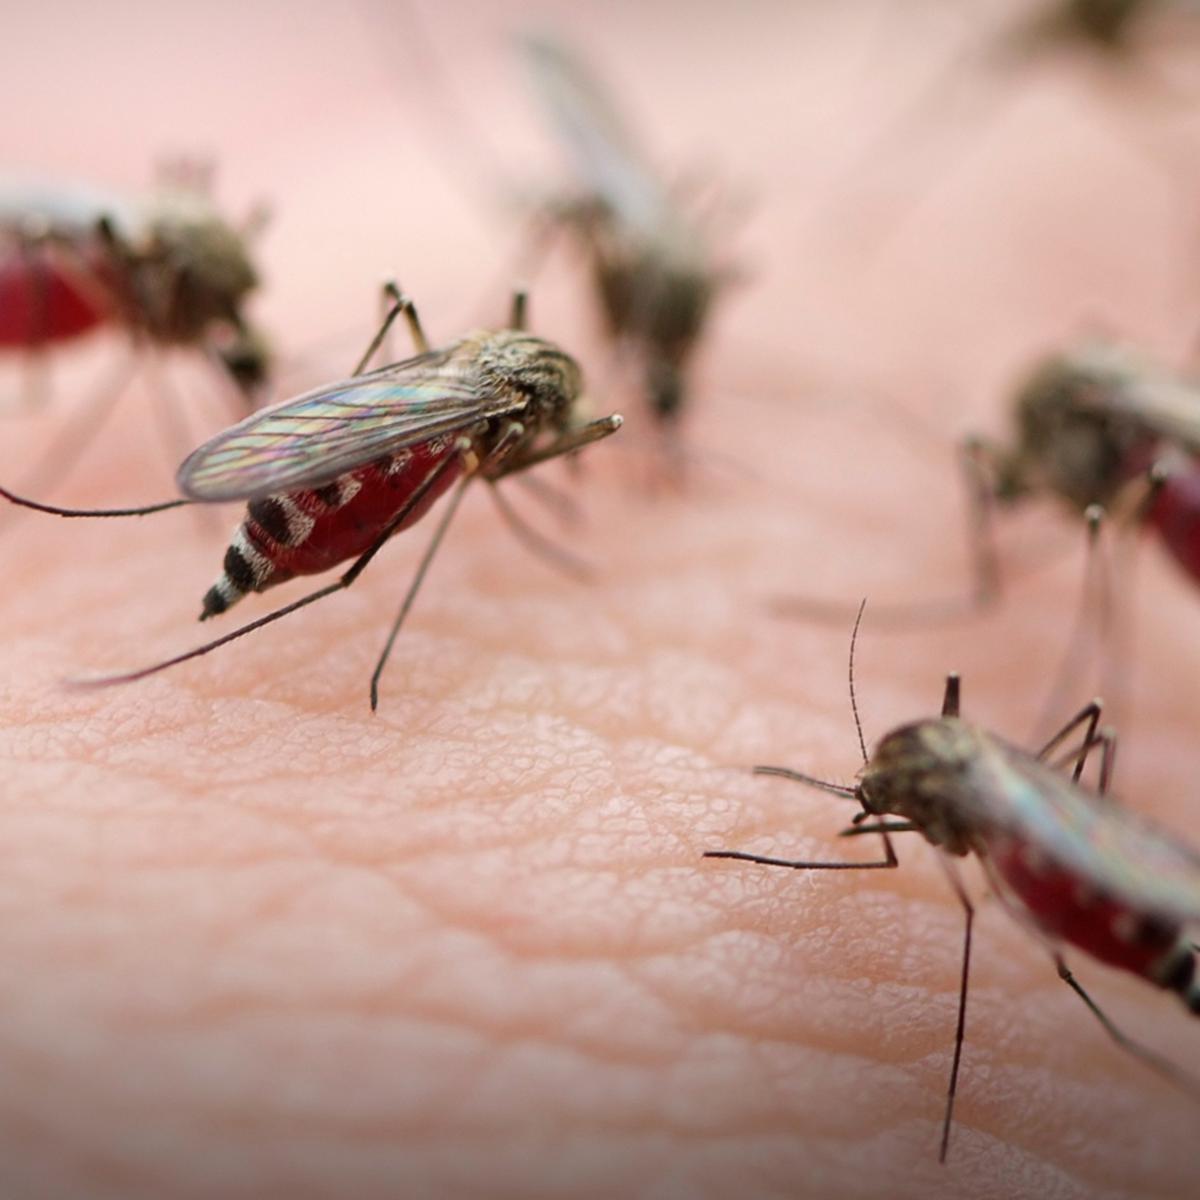 Upaya apakah yang efektif untuk mengendalikan nyamuk dilingkungan kita